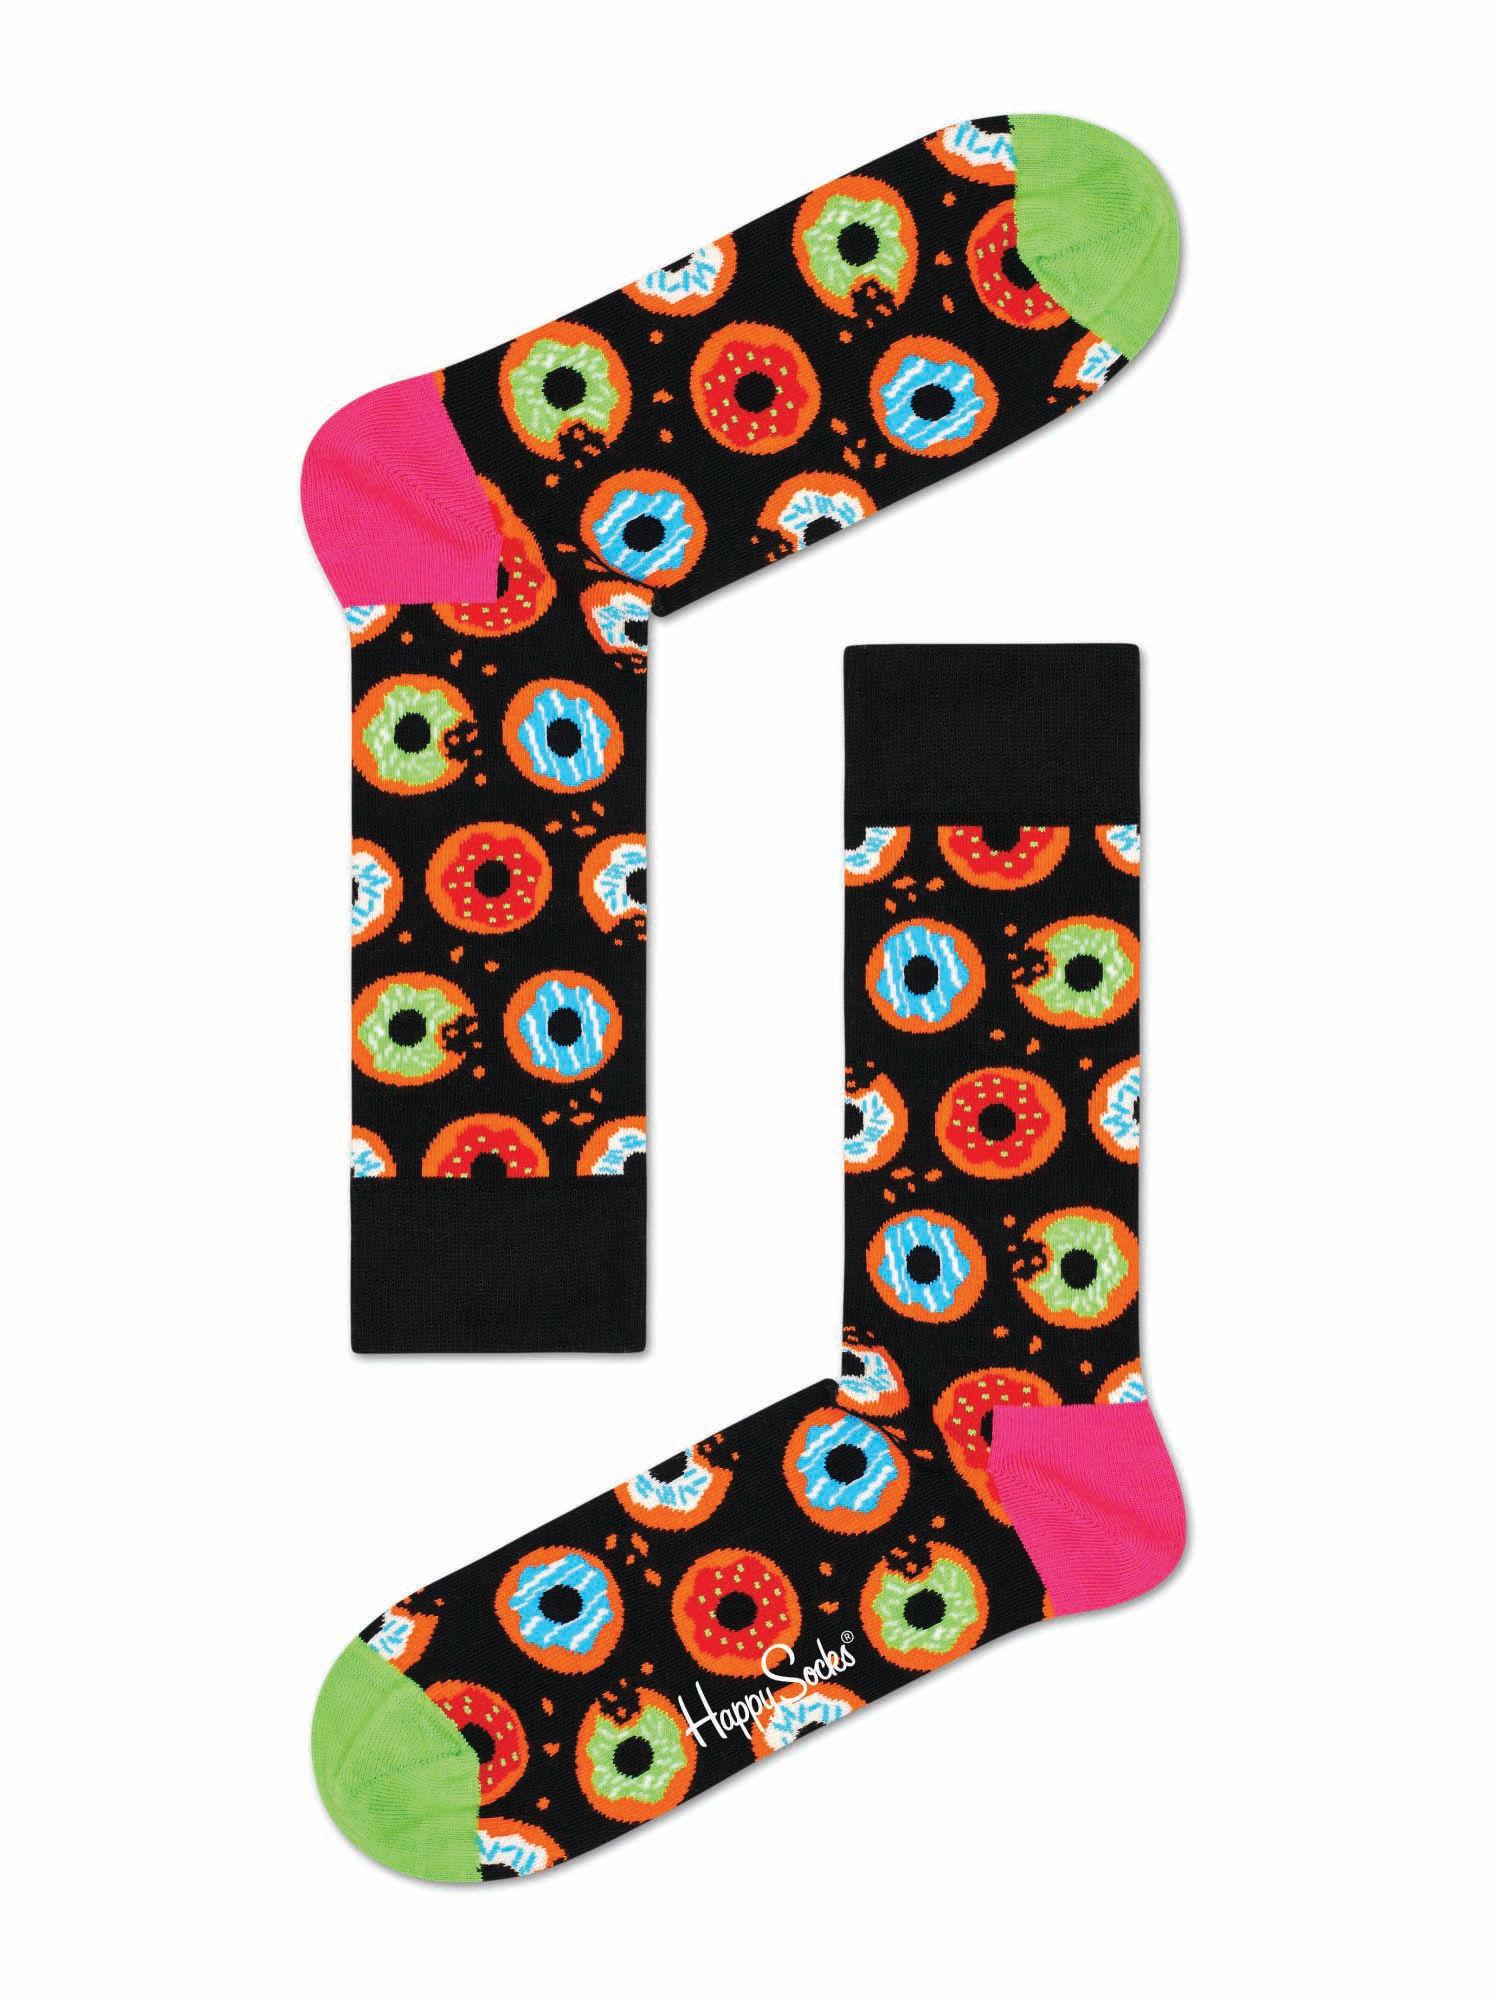 donut socks - multi-color